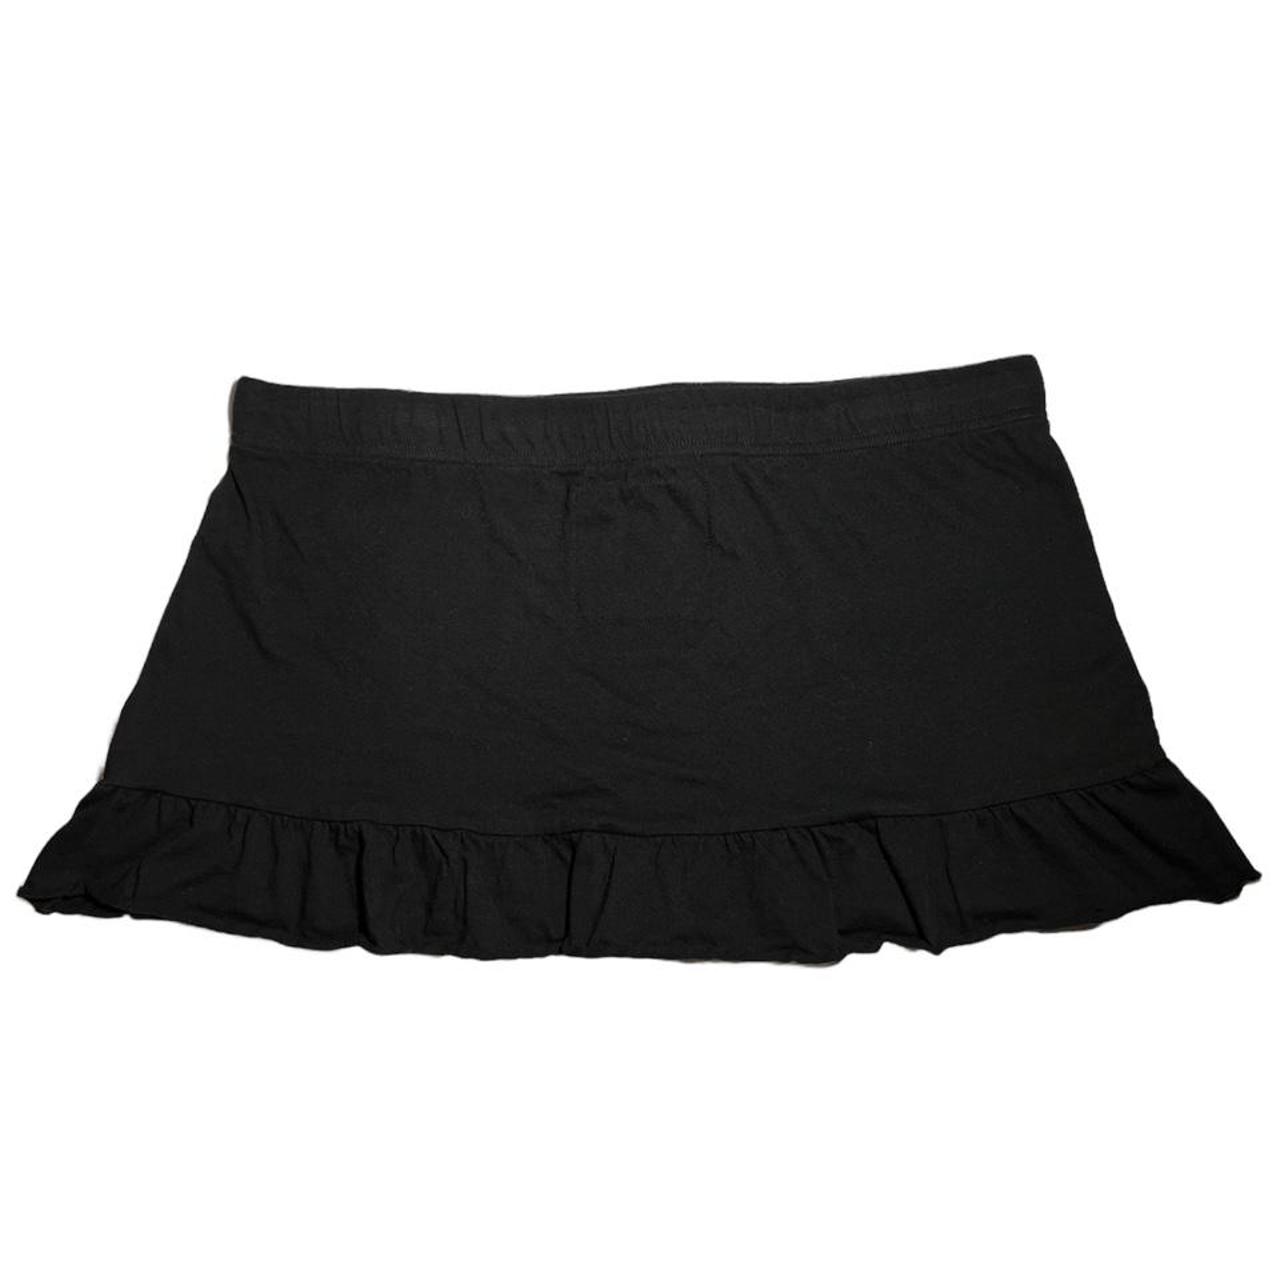 So Wear It Declare It Women's Black Skirt (2)